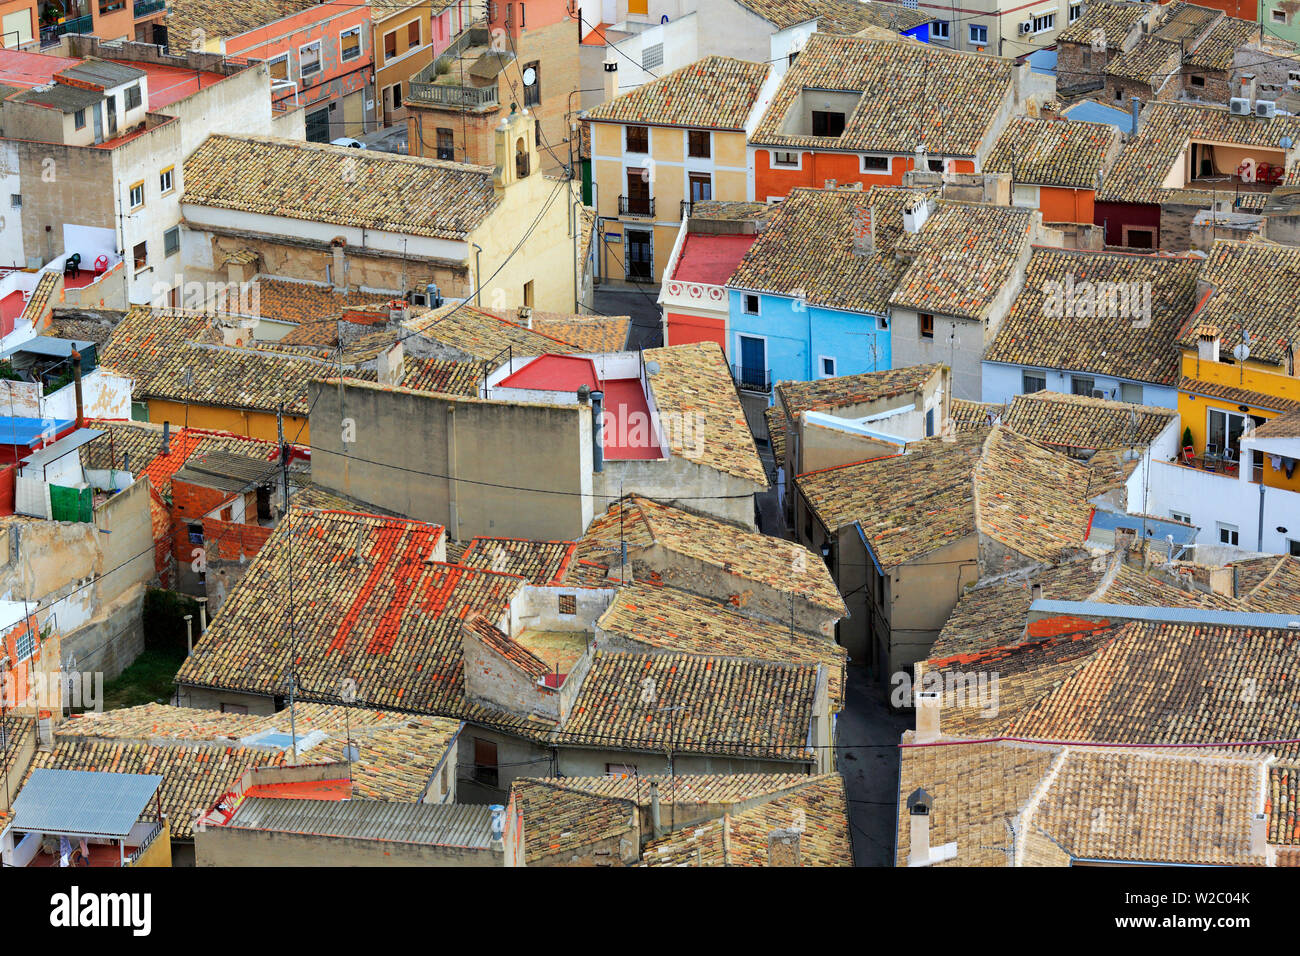 Cityscape from Atalaya Castle, Villena, Valencian Community, Spain Stock Photo